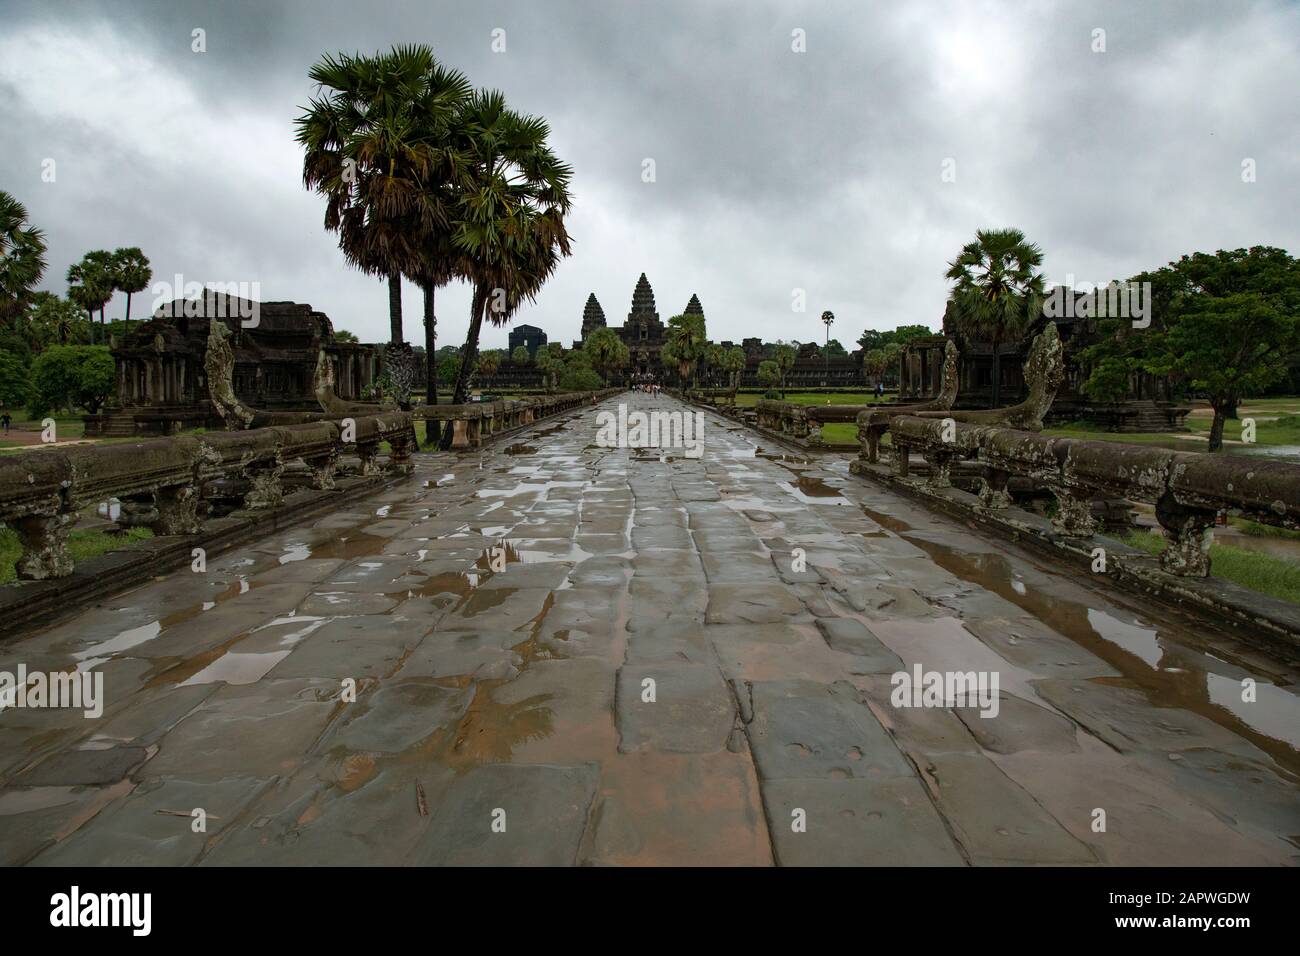 No visitors at Angkor Wat complex during a rainy morning Stock Photo